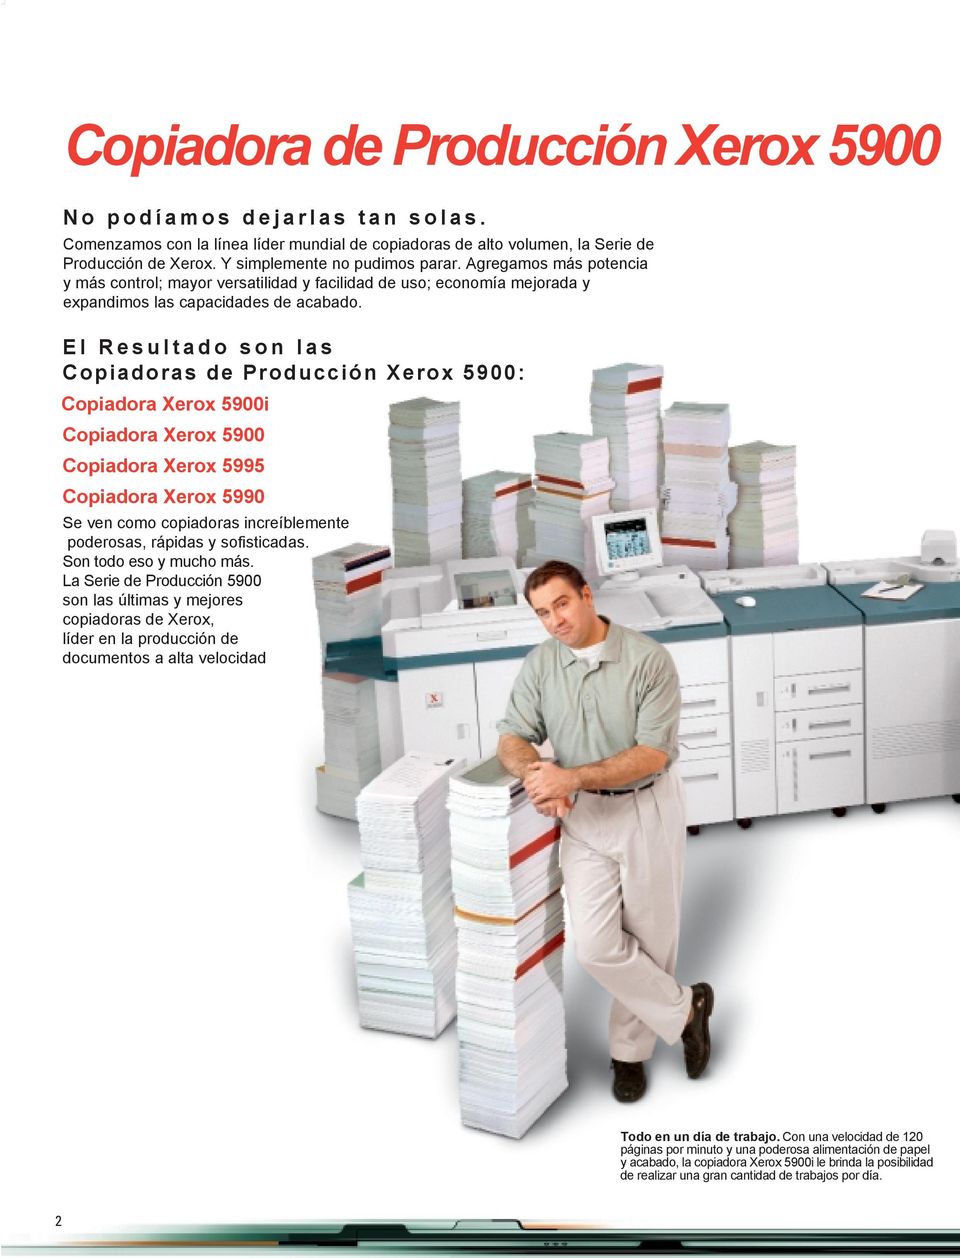 El Resultado son las Copiadoras de Producción Xerox 5900: Copiadora Xerox 5900i Copiadora Xerox 5900 Copiadora Xerox 5995 Copiadora Xerox 5990 Se ven como copiadoras increíblemente poderosas, rápidas